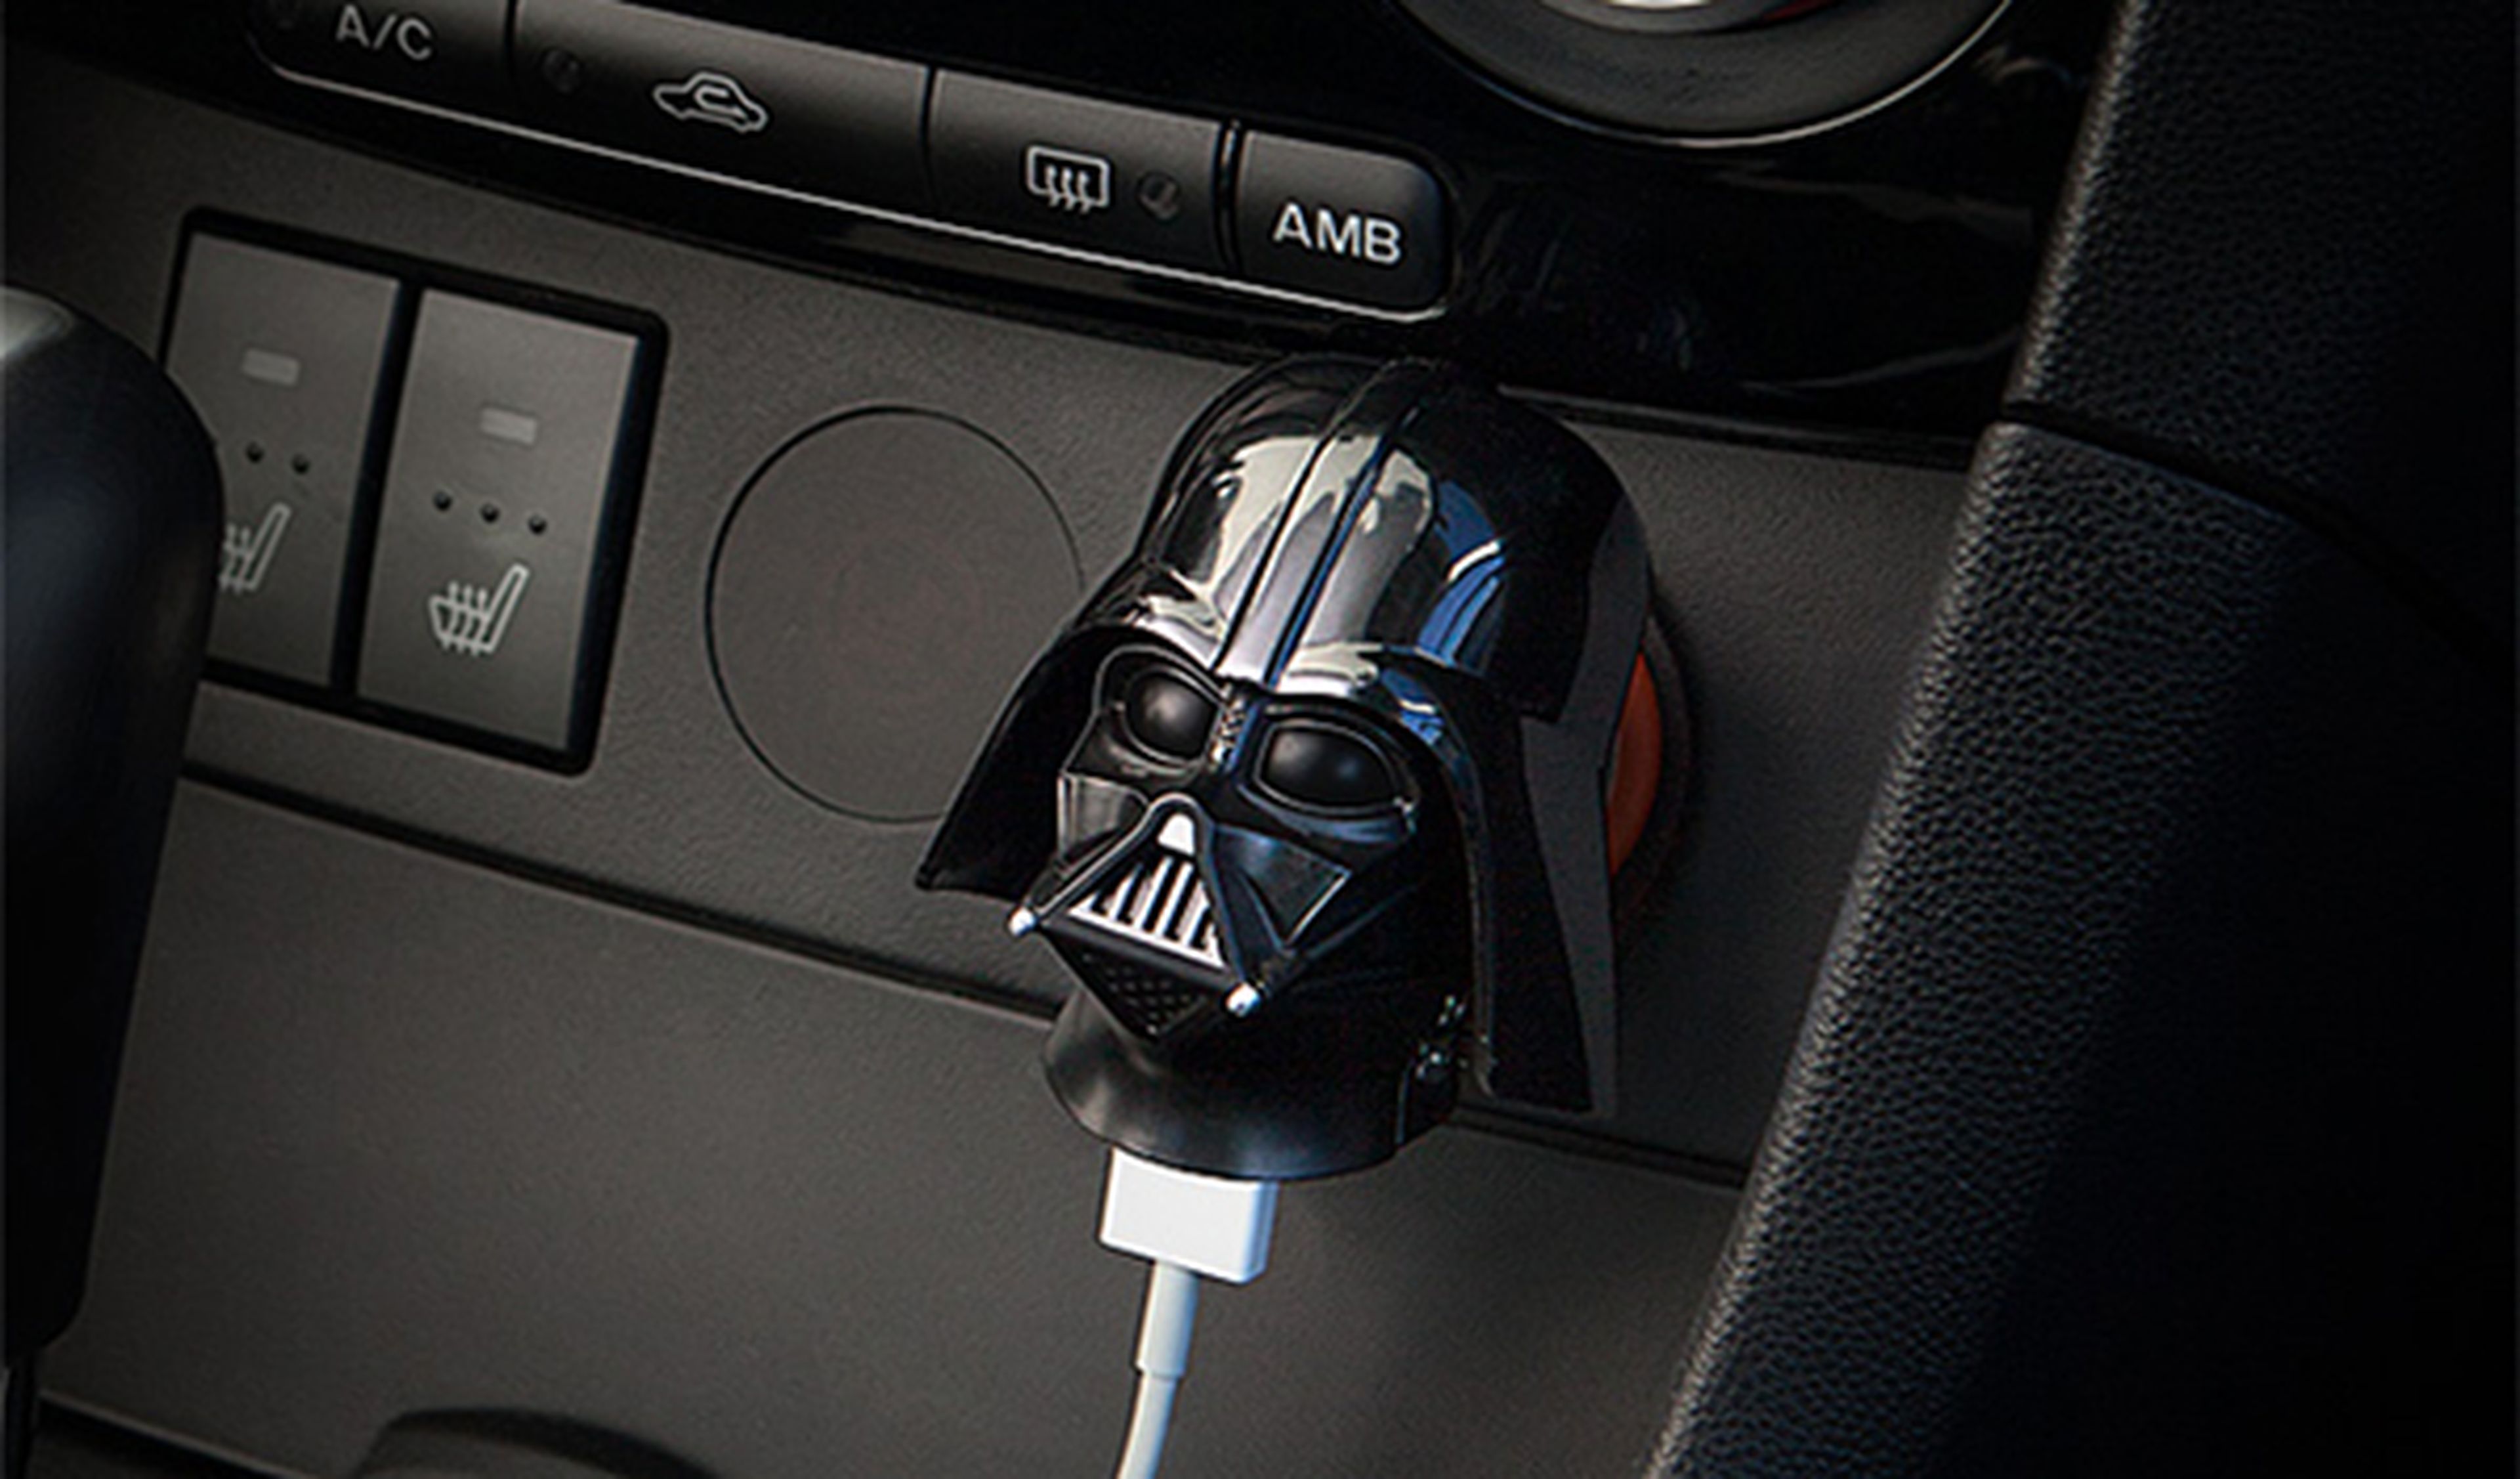 Pon a Darth Vader de copiloto en tu coche